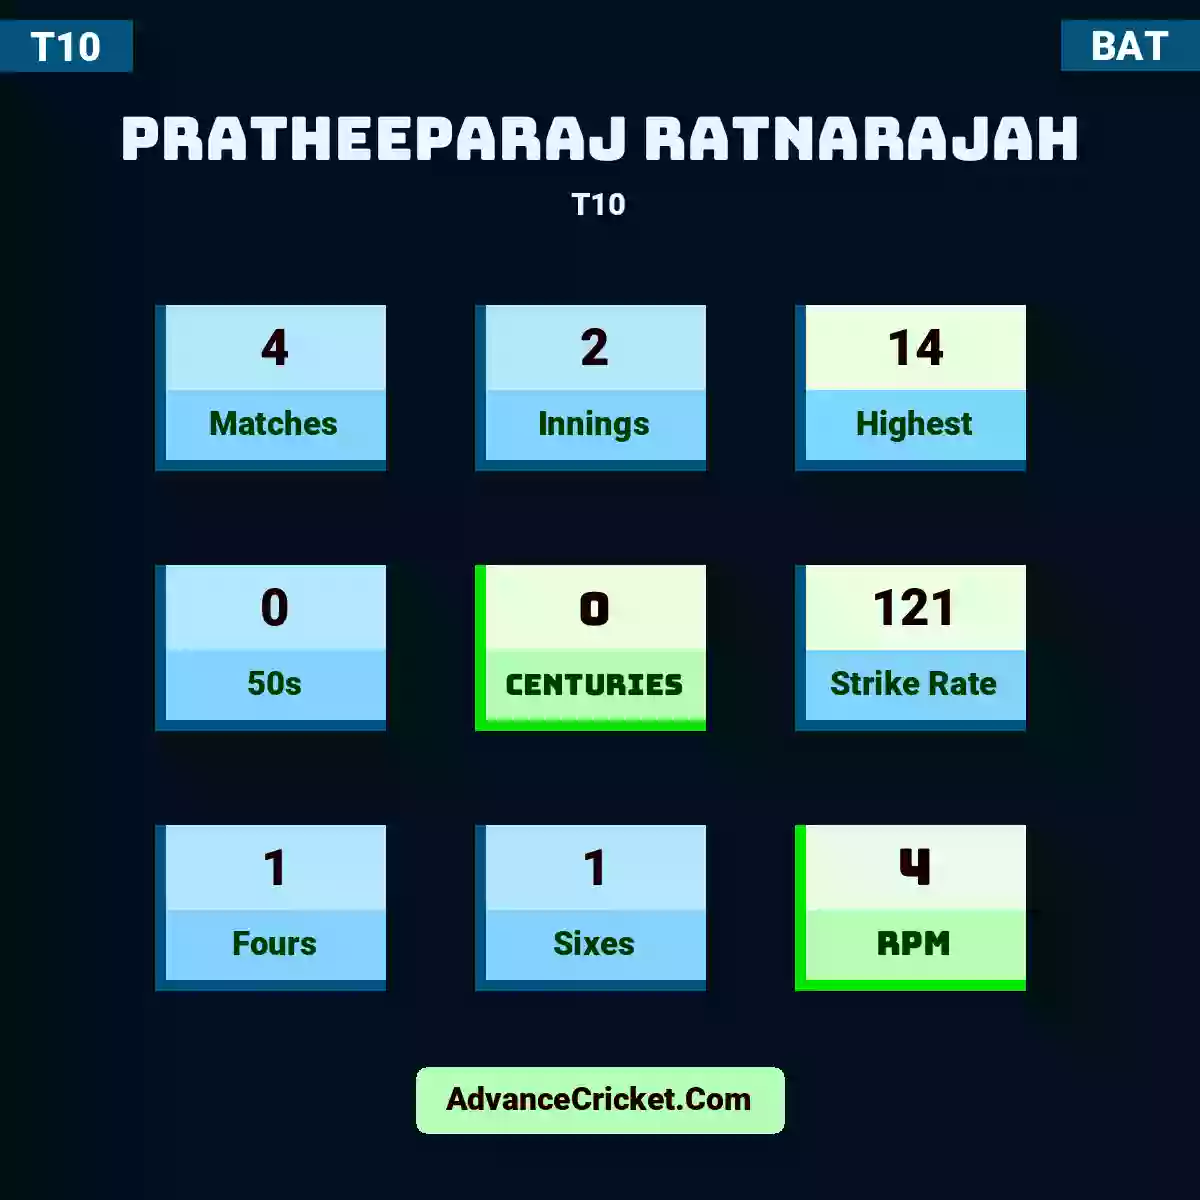 Pratheeparaj Ratnarajah T10 , Pratheeparaj Ratnarajah played 4 matches, scored 14 runs as highest, 0 half-centuries, and 0 centuries, with a strike rate of 121. P.Ratnarajah hit 1 fours and 1 sixes, with an RPM of 4.